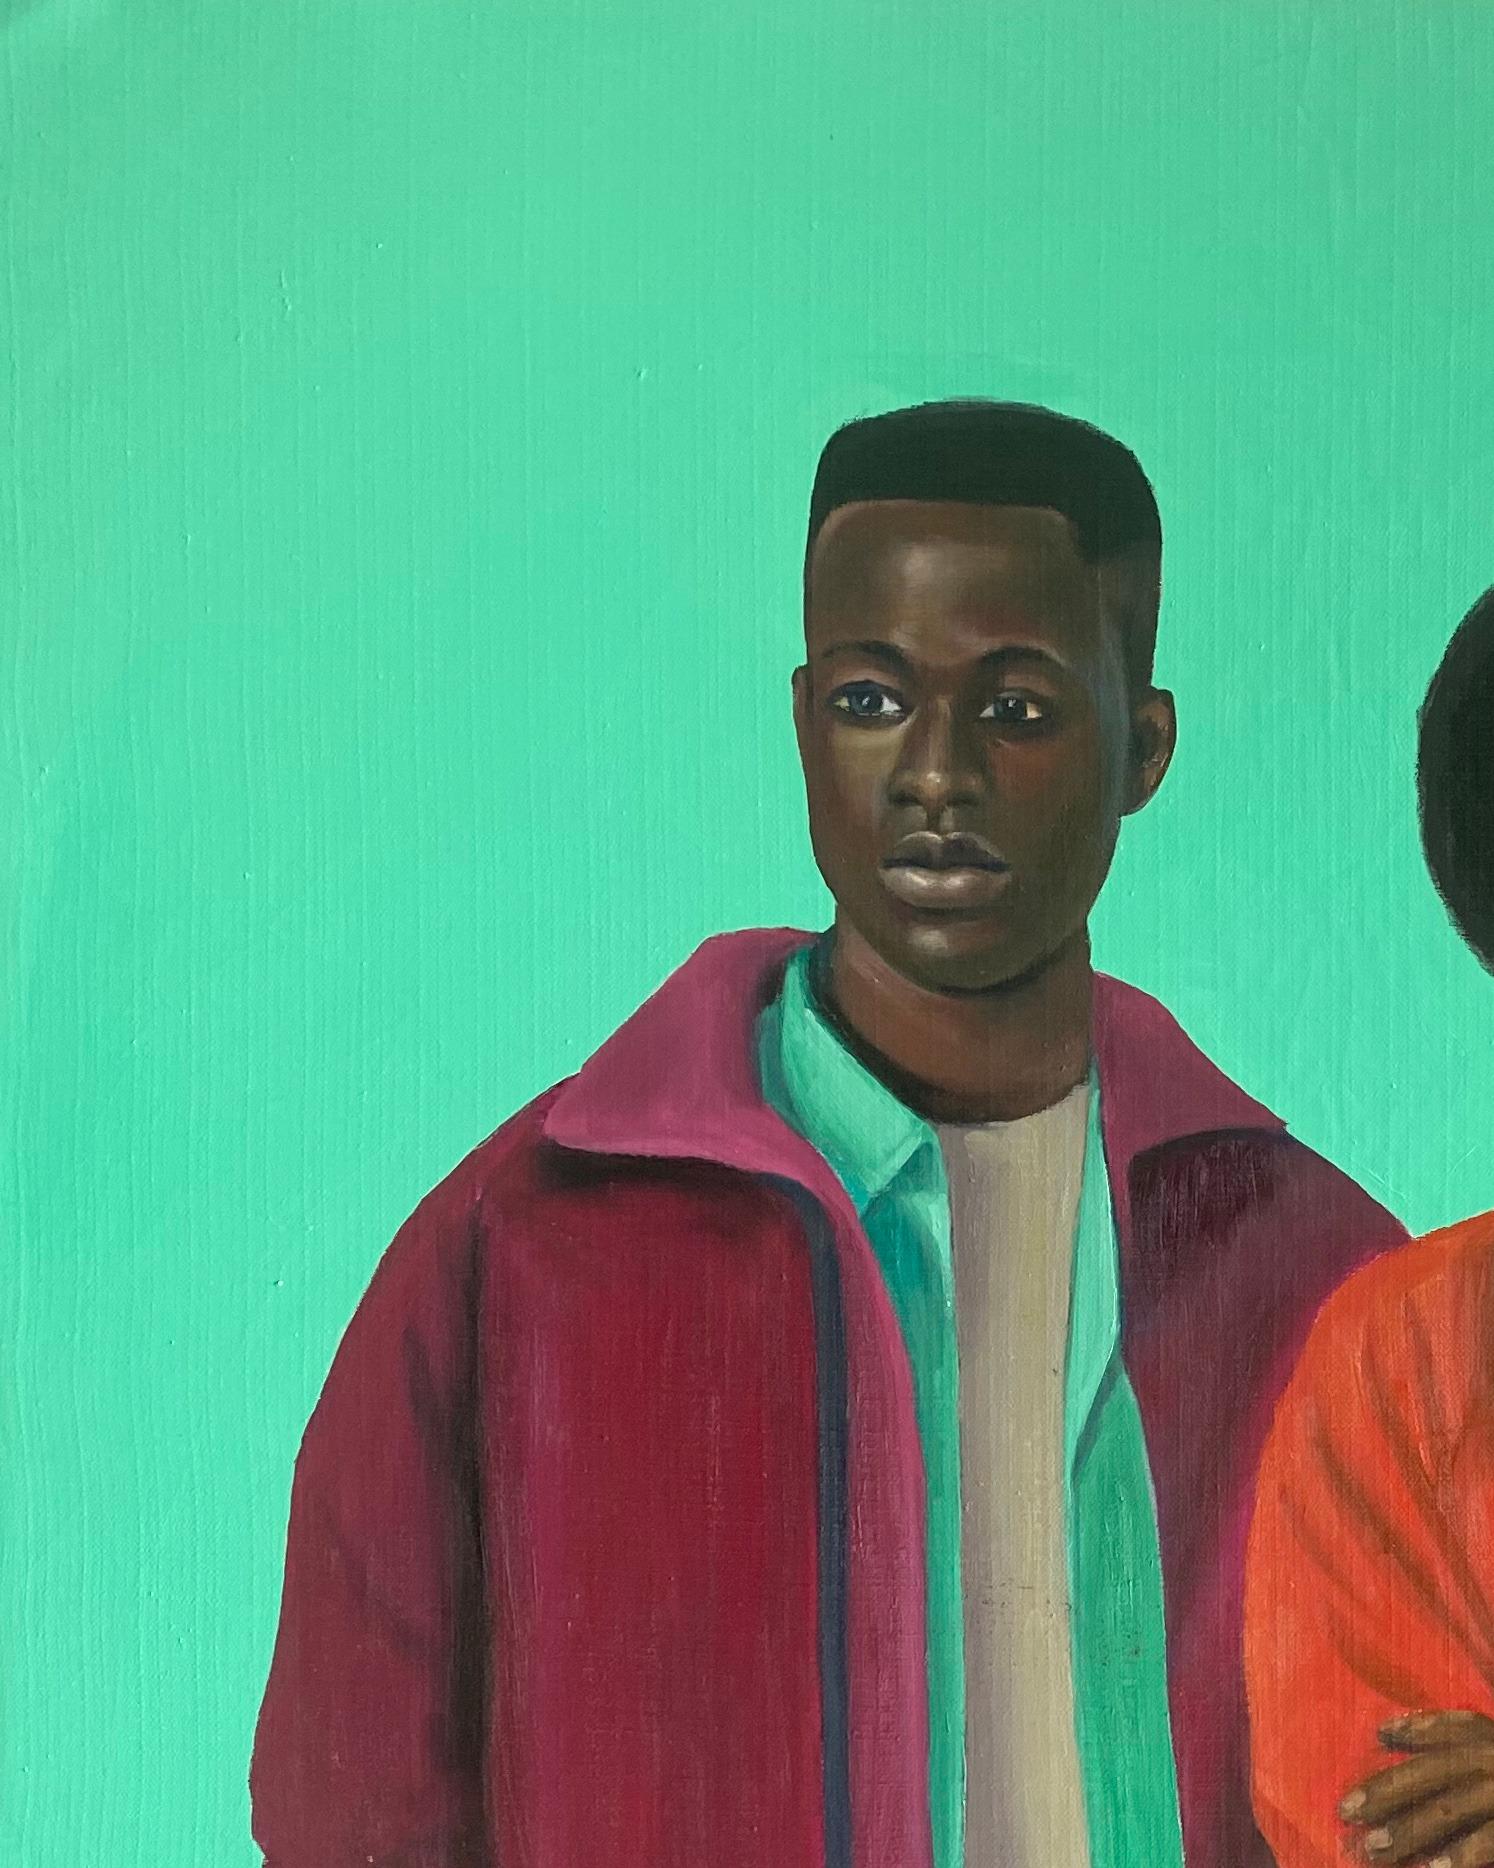 Die Reise der Liebe – Painting von Busari Adewale